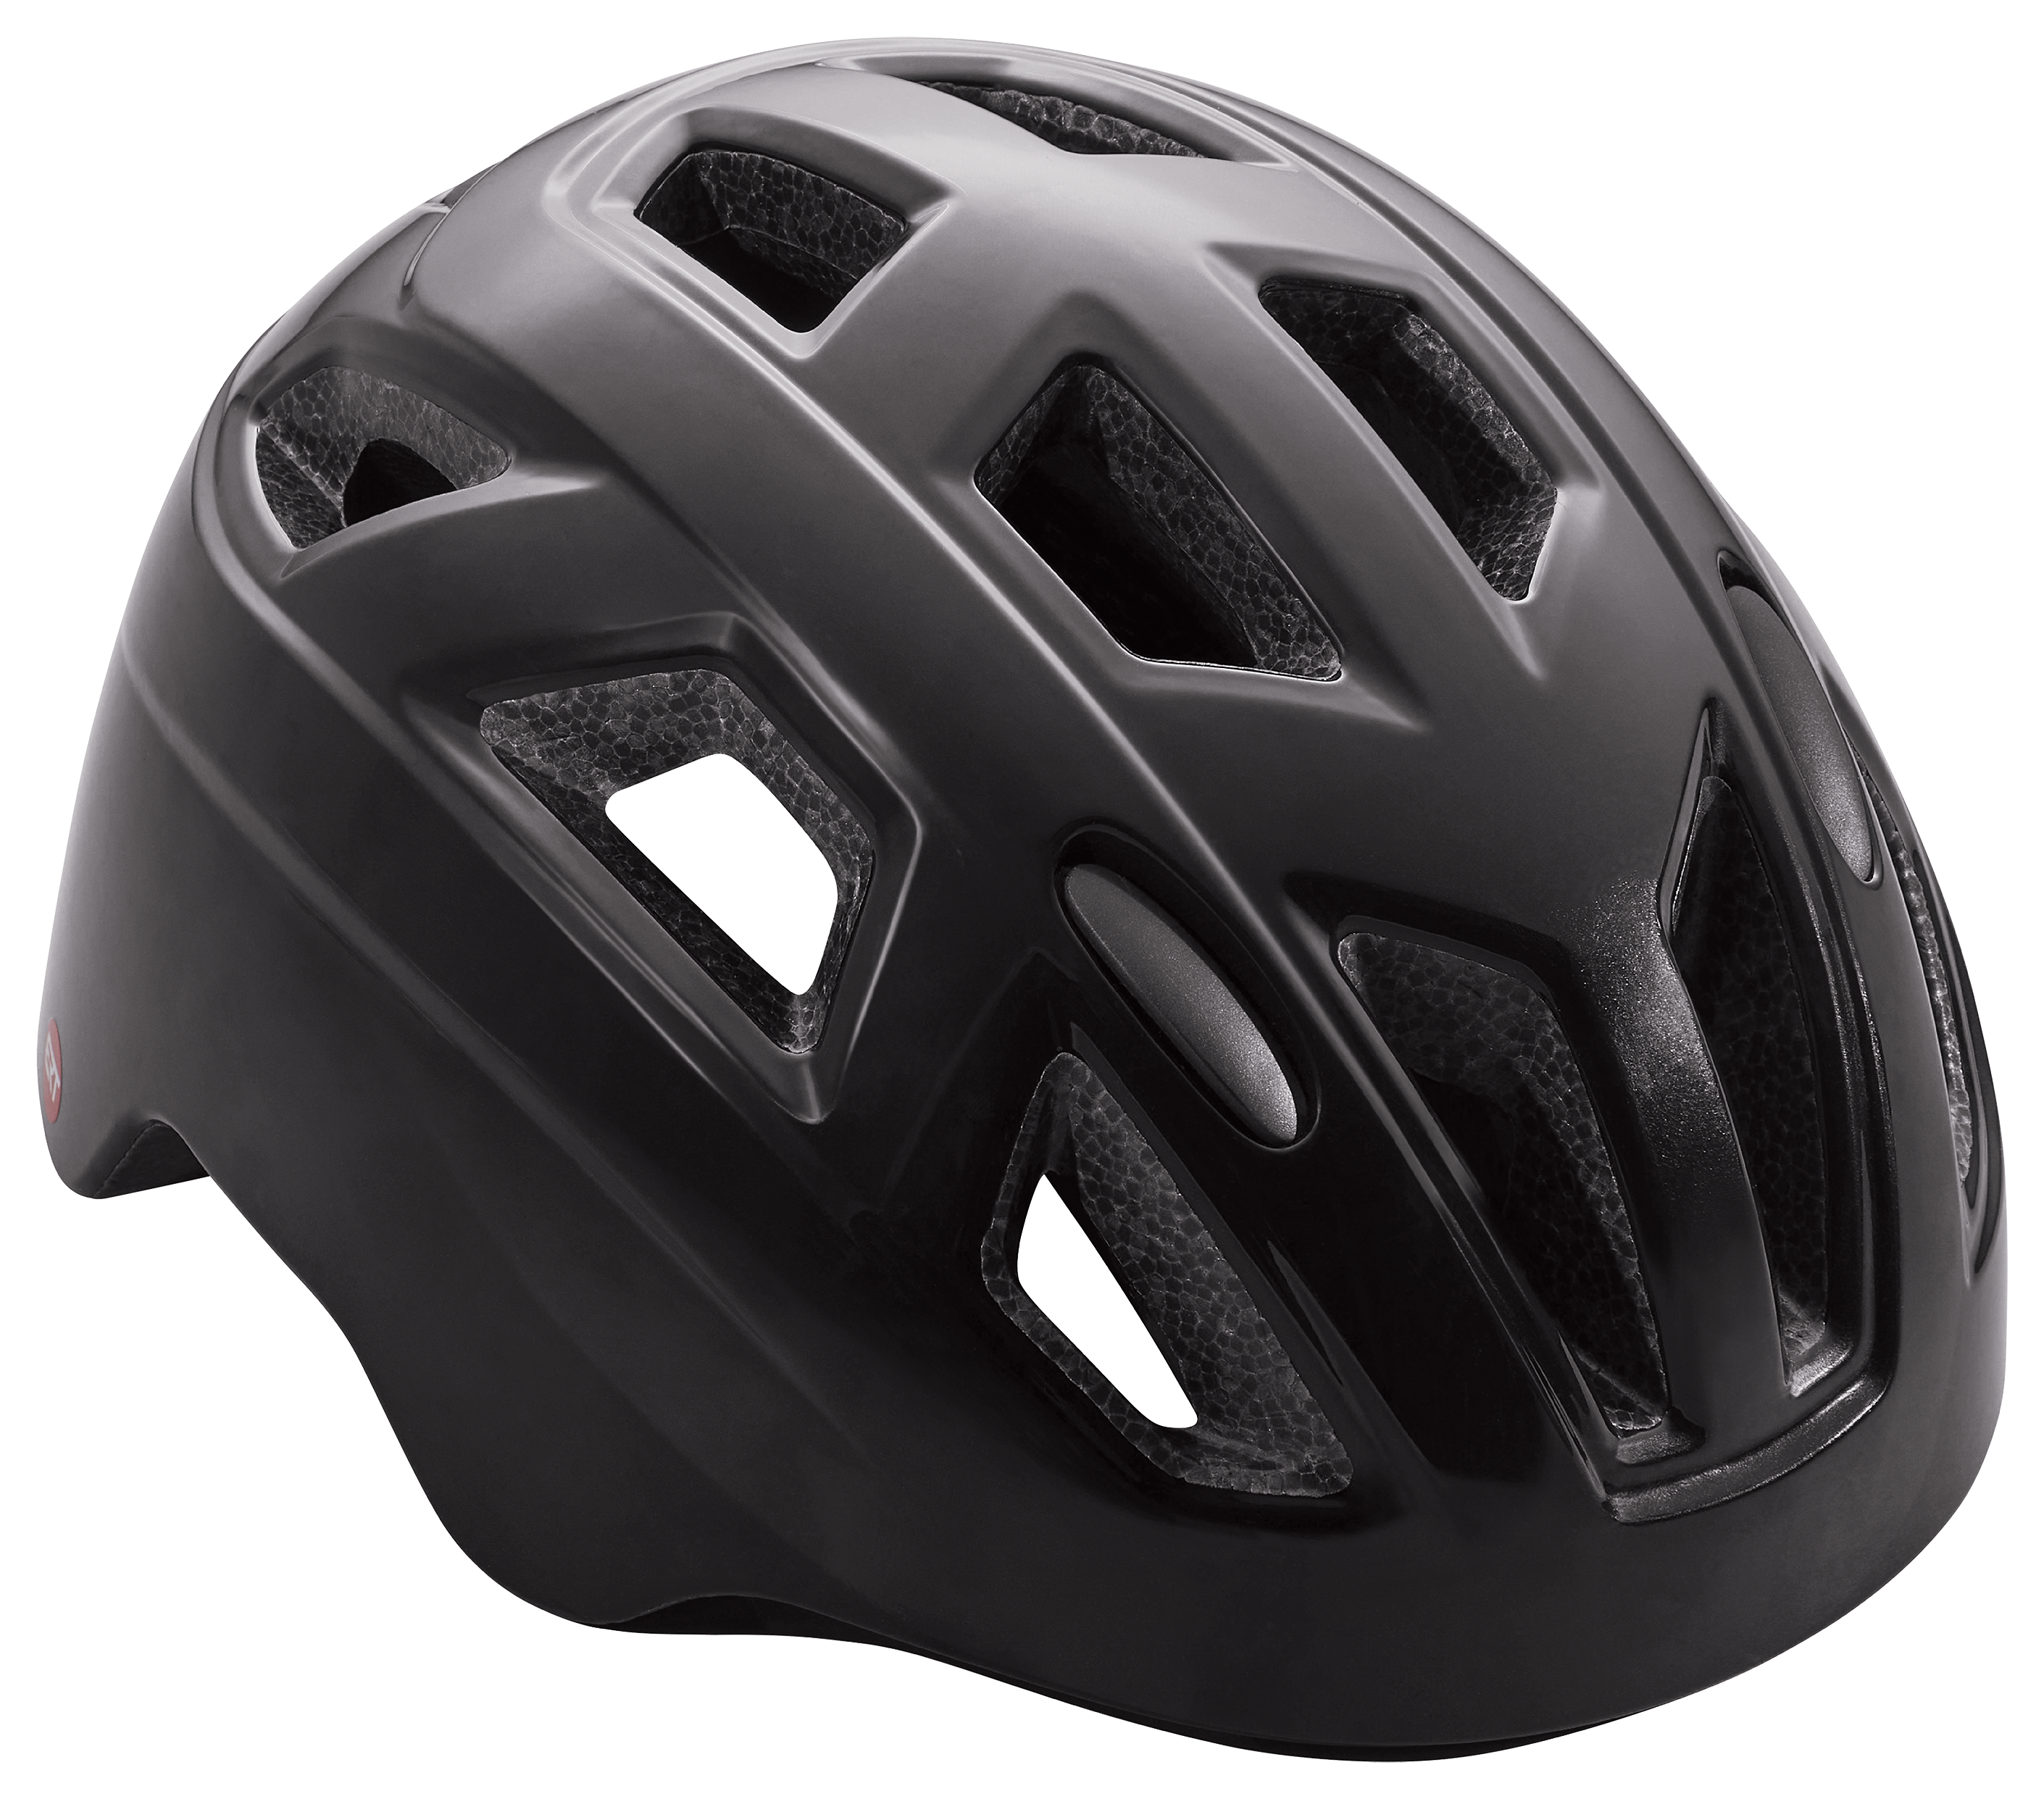 Schwinn Chroma ERT Bike Helmet for Kids - Black